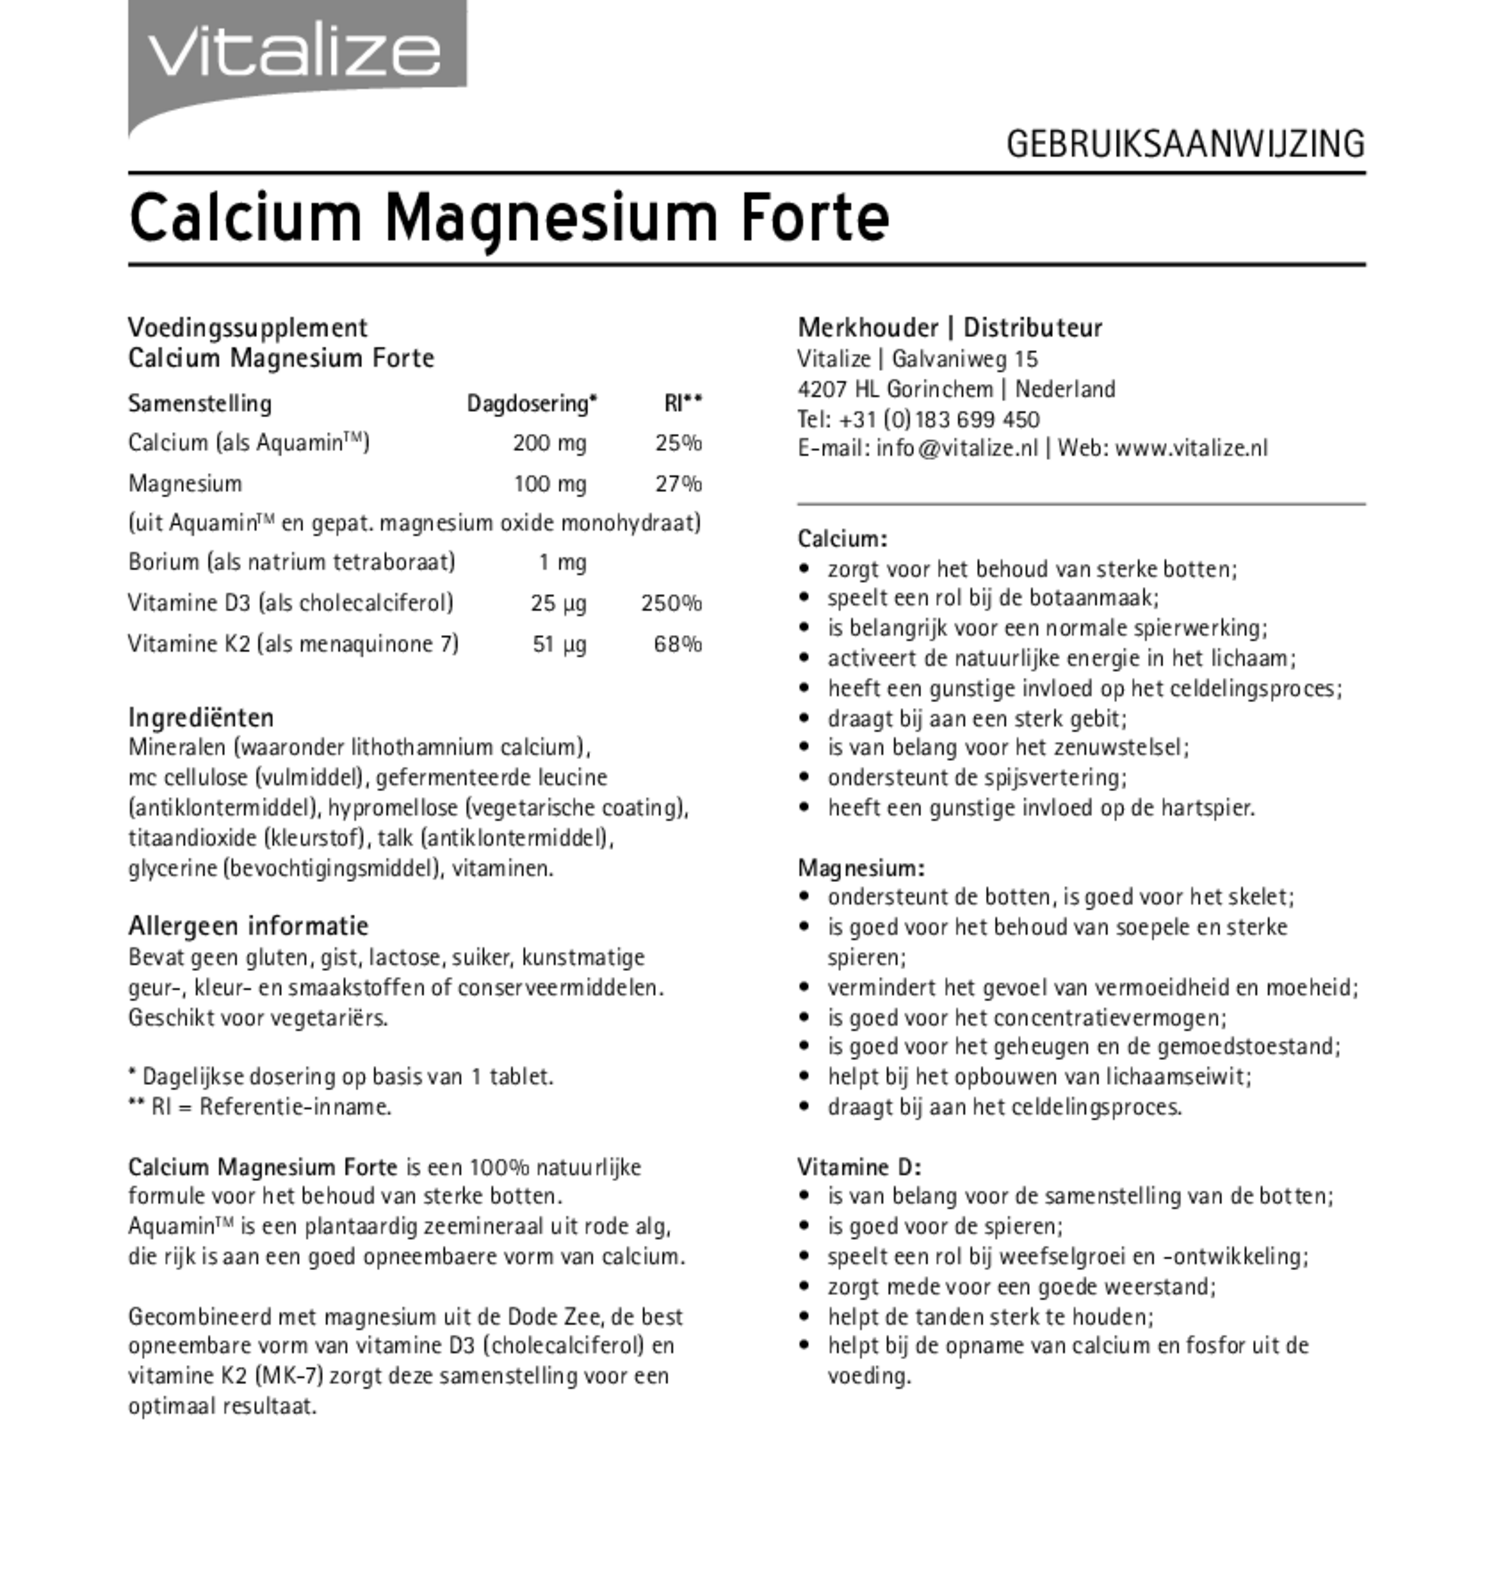 Calcium Magnesium Forte Tabletten afbeelding van document #1, gebruiksaanwijzing